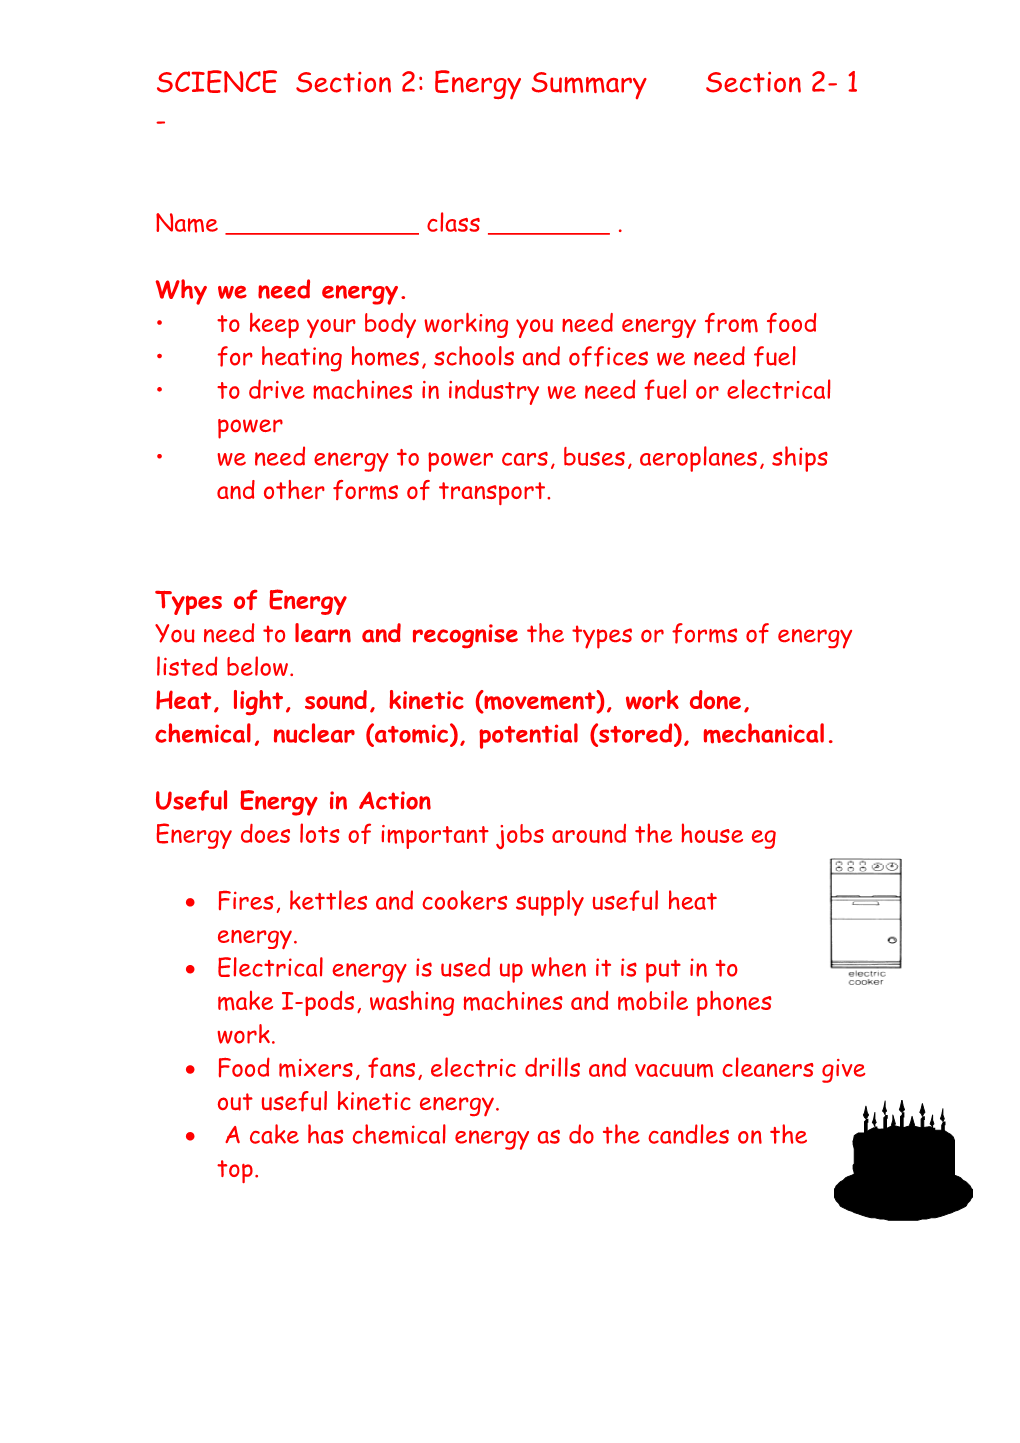 Section 3: Energy Summary